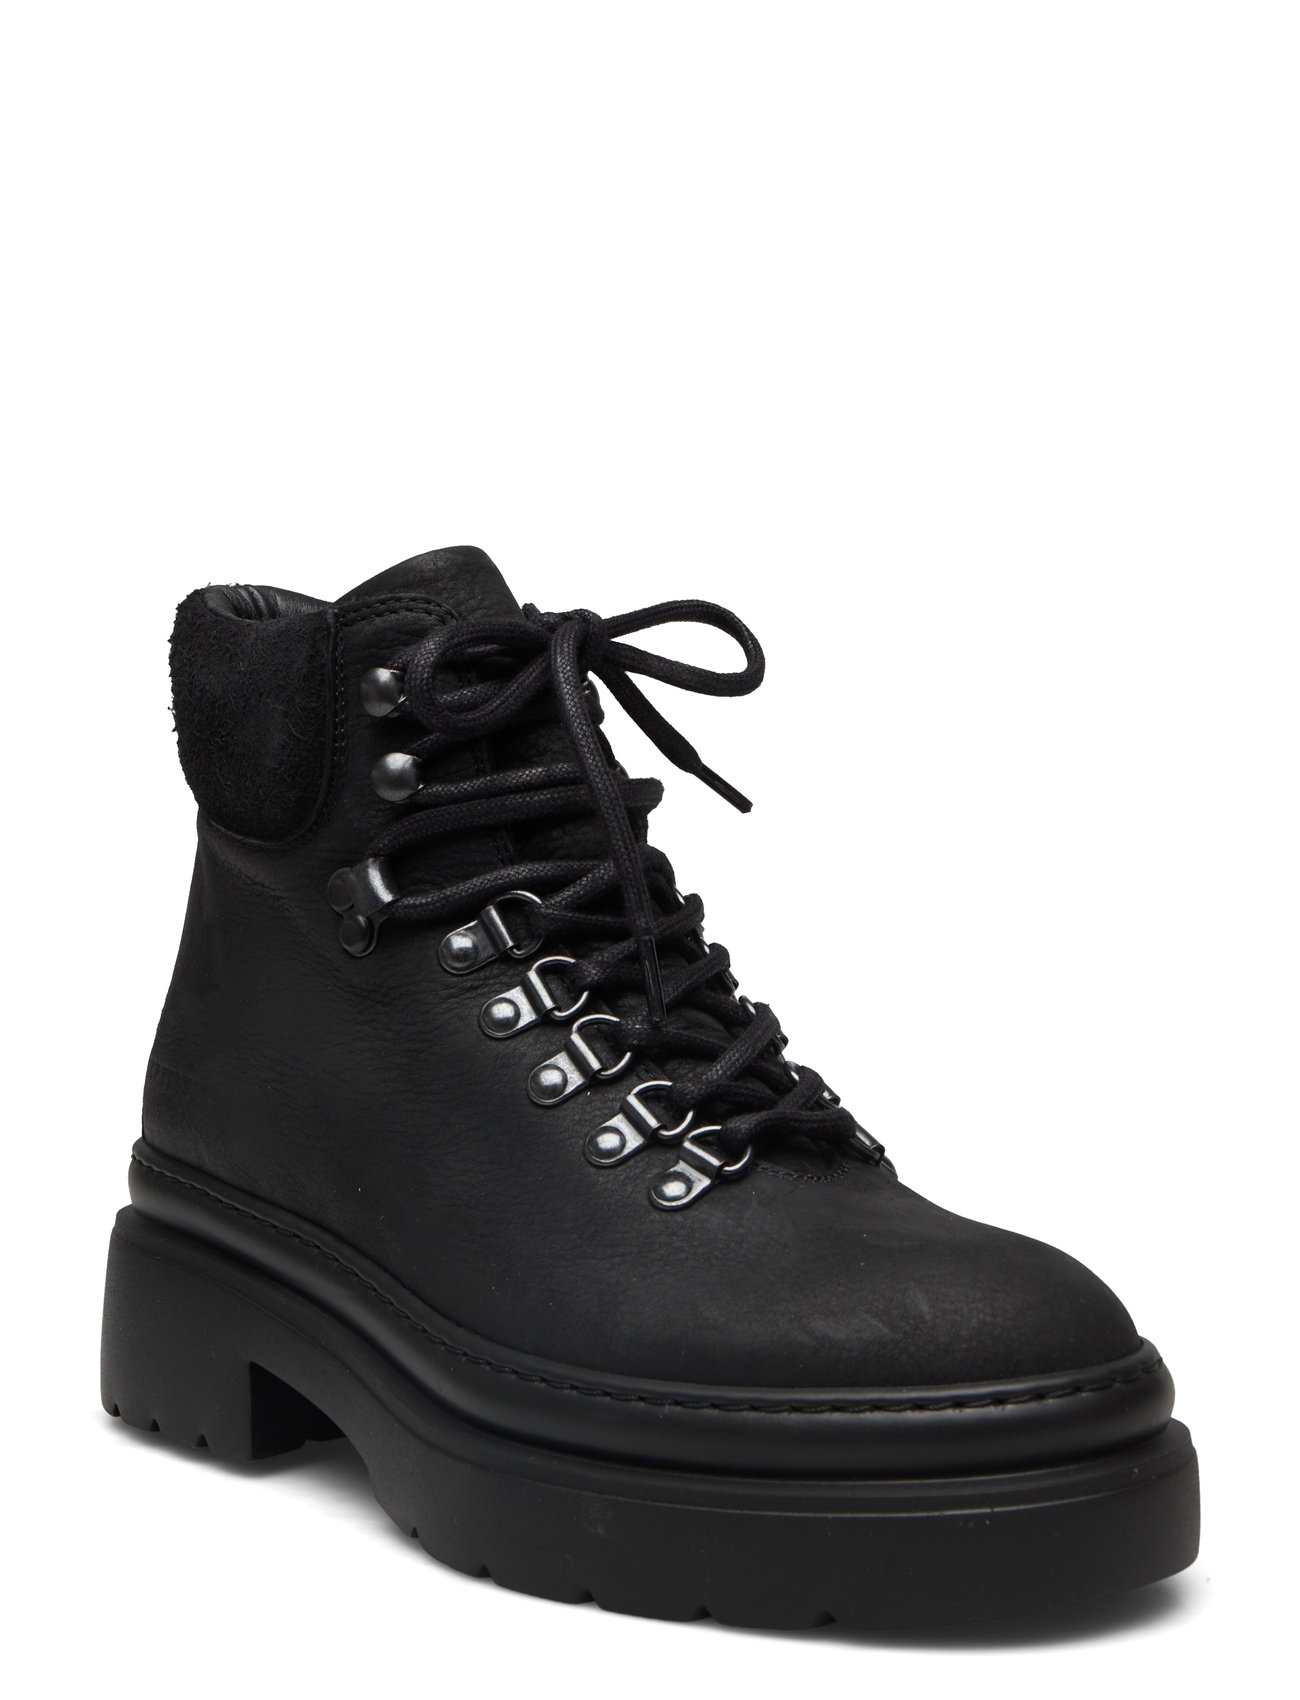 "Copenhagen Studios" "Cph262 Shoes Boots Ankle Laced Black Copenhagen